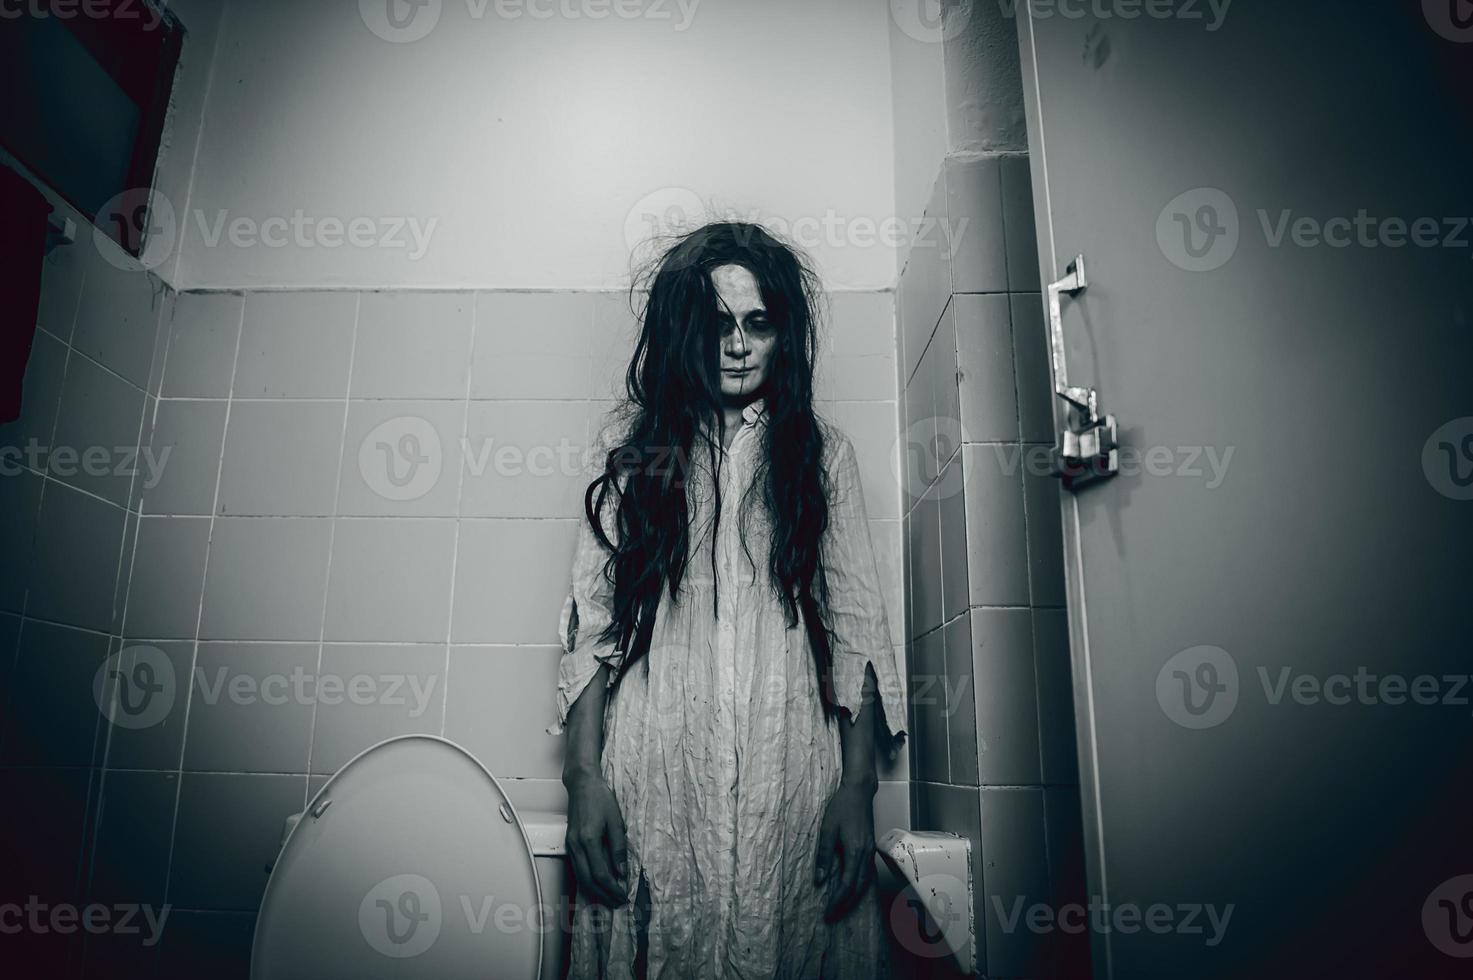 portret van Aziatische vrouw make-up geest, enge horrorscène voor achtergrond, halloween festival concept, spookfilms poster, boze geest in het appartement foto